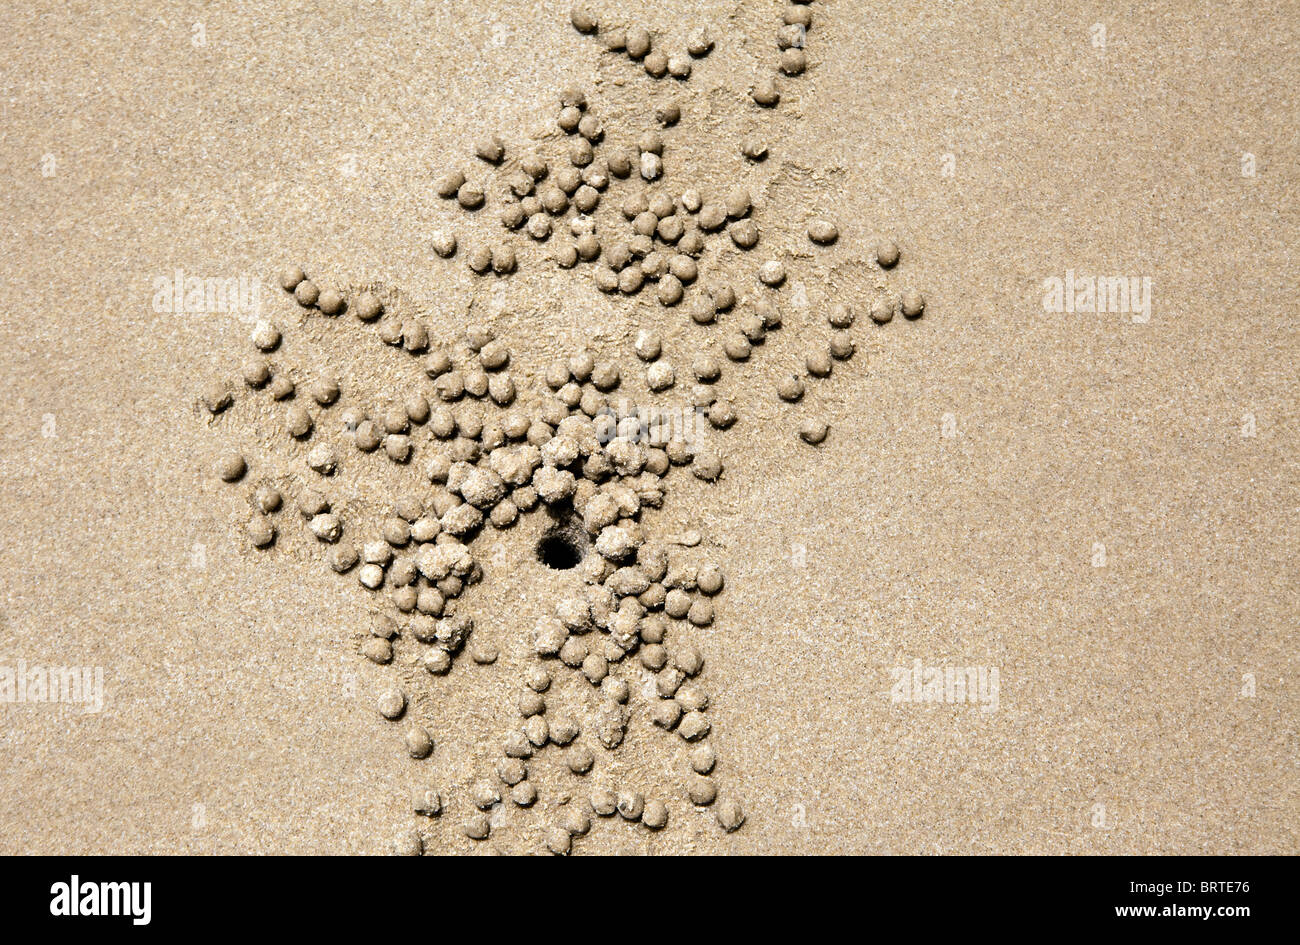 Trous de crabe sont vus dans le sable d'une plage dans la région de Bornéo, Malaisie Banque D'Images